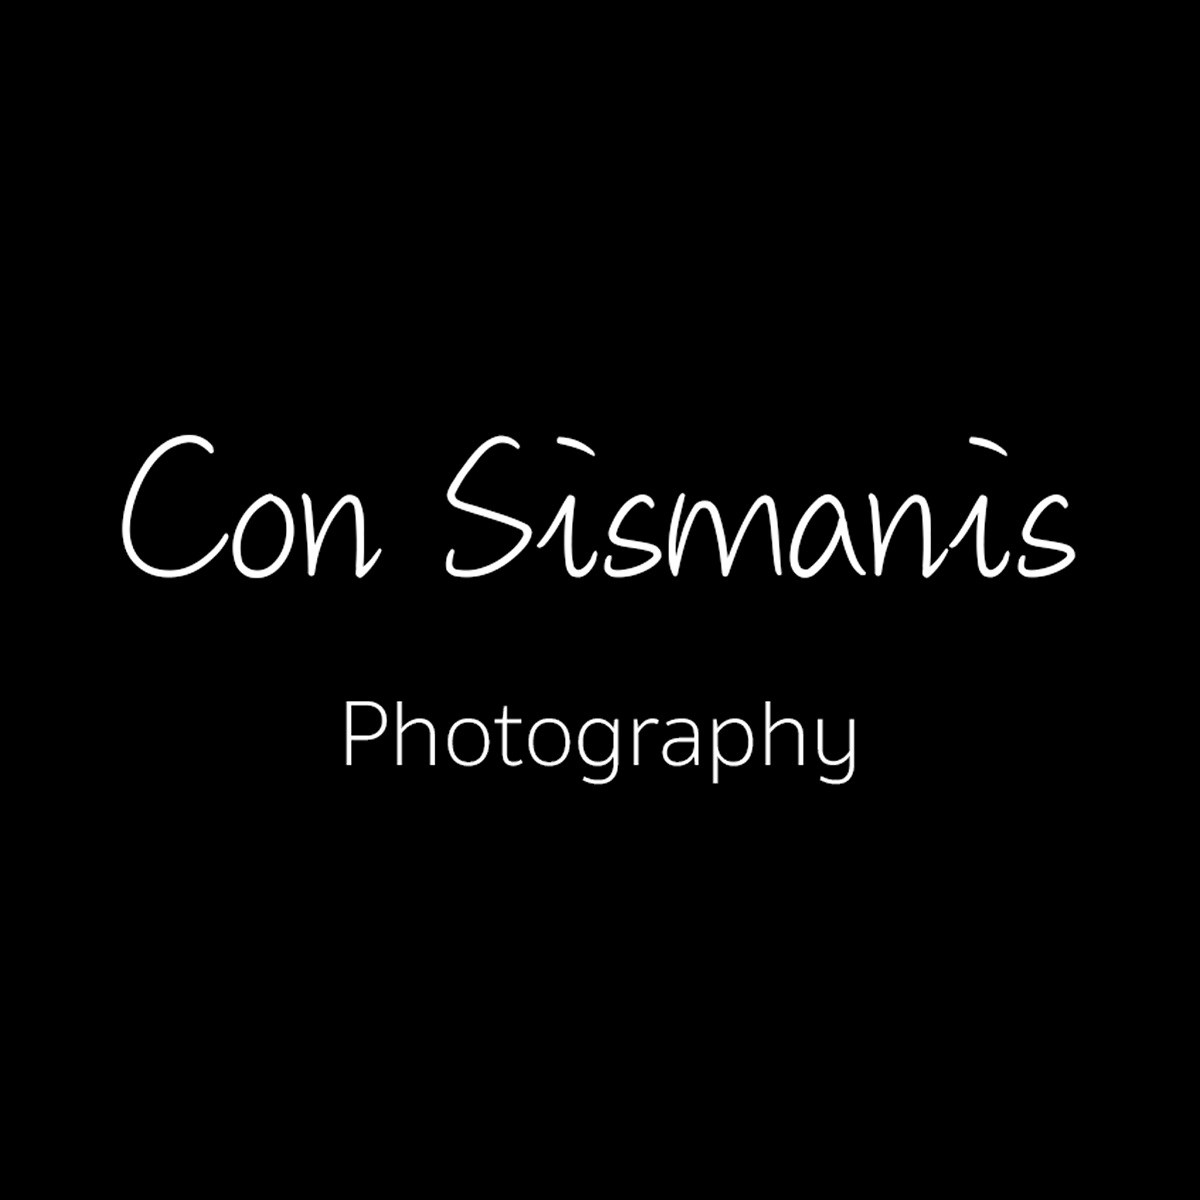 Con Sismanis Photography, Brad Turner, Kristyna Dostalova, Meg Kolac, Gabriela Azar Schreiner, Theo Papathomas, Con Sismanis Artworks